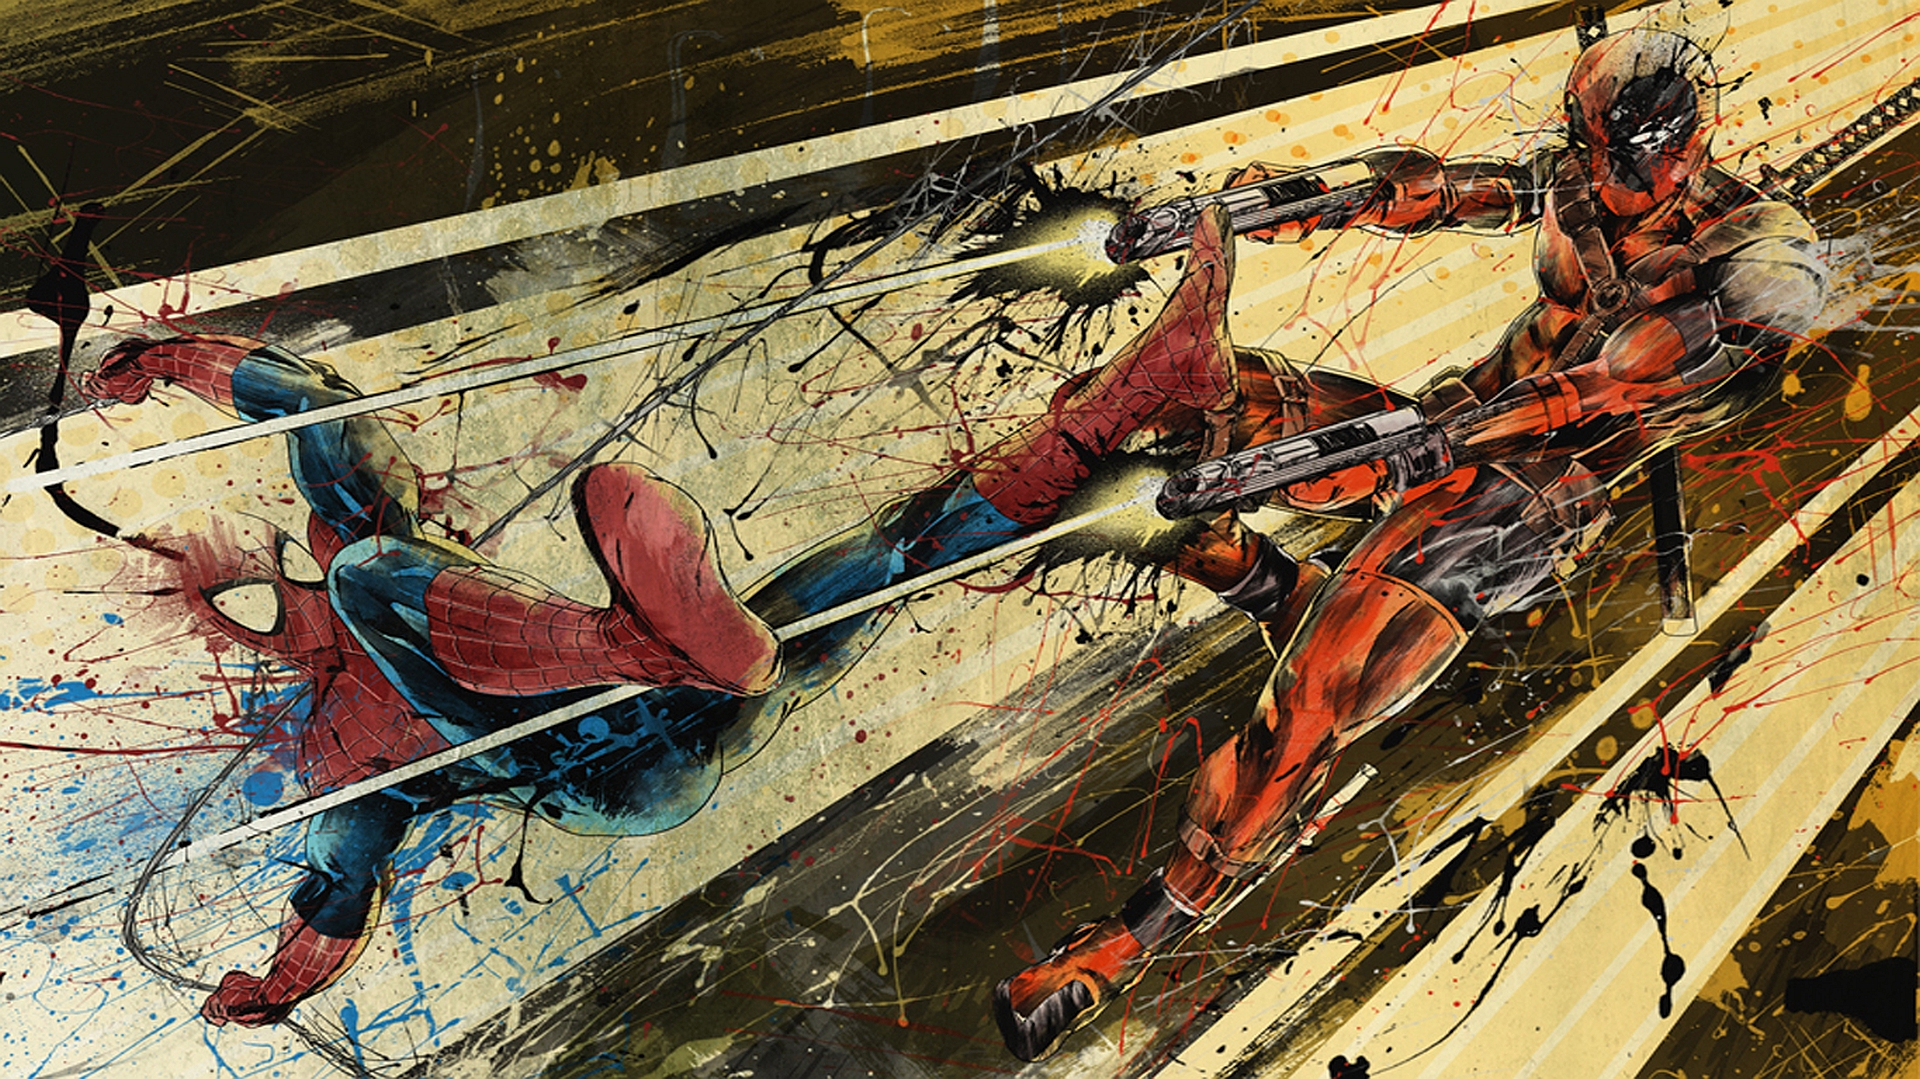 Spiderman Vs Deadpool #15